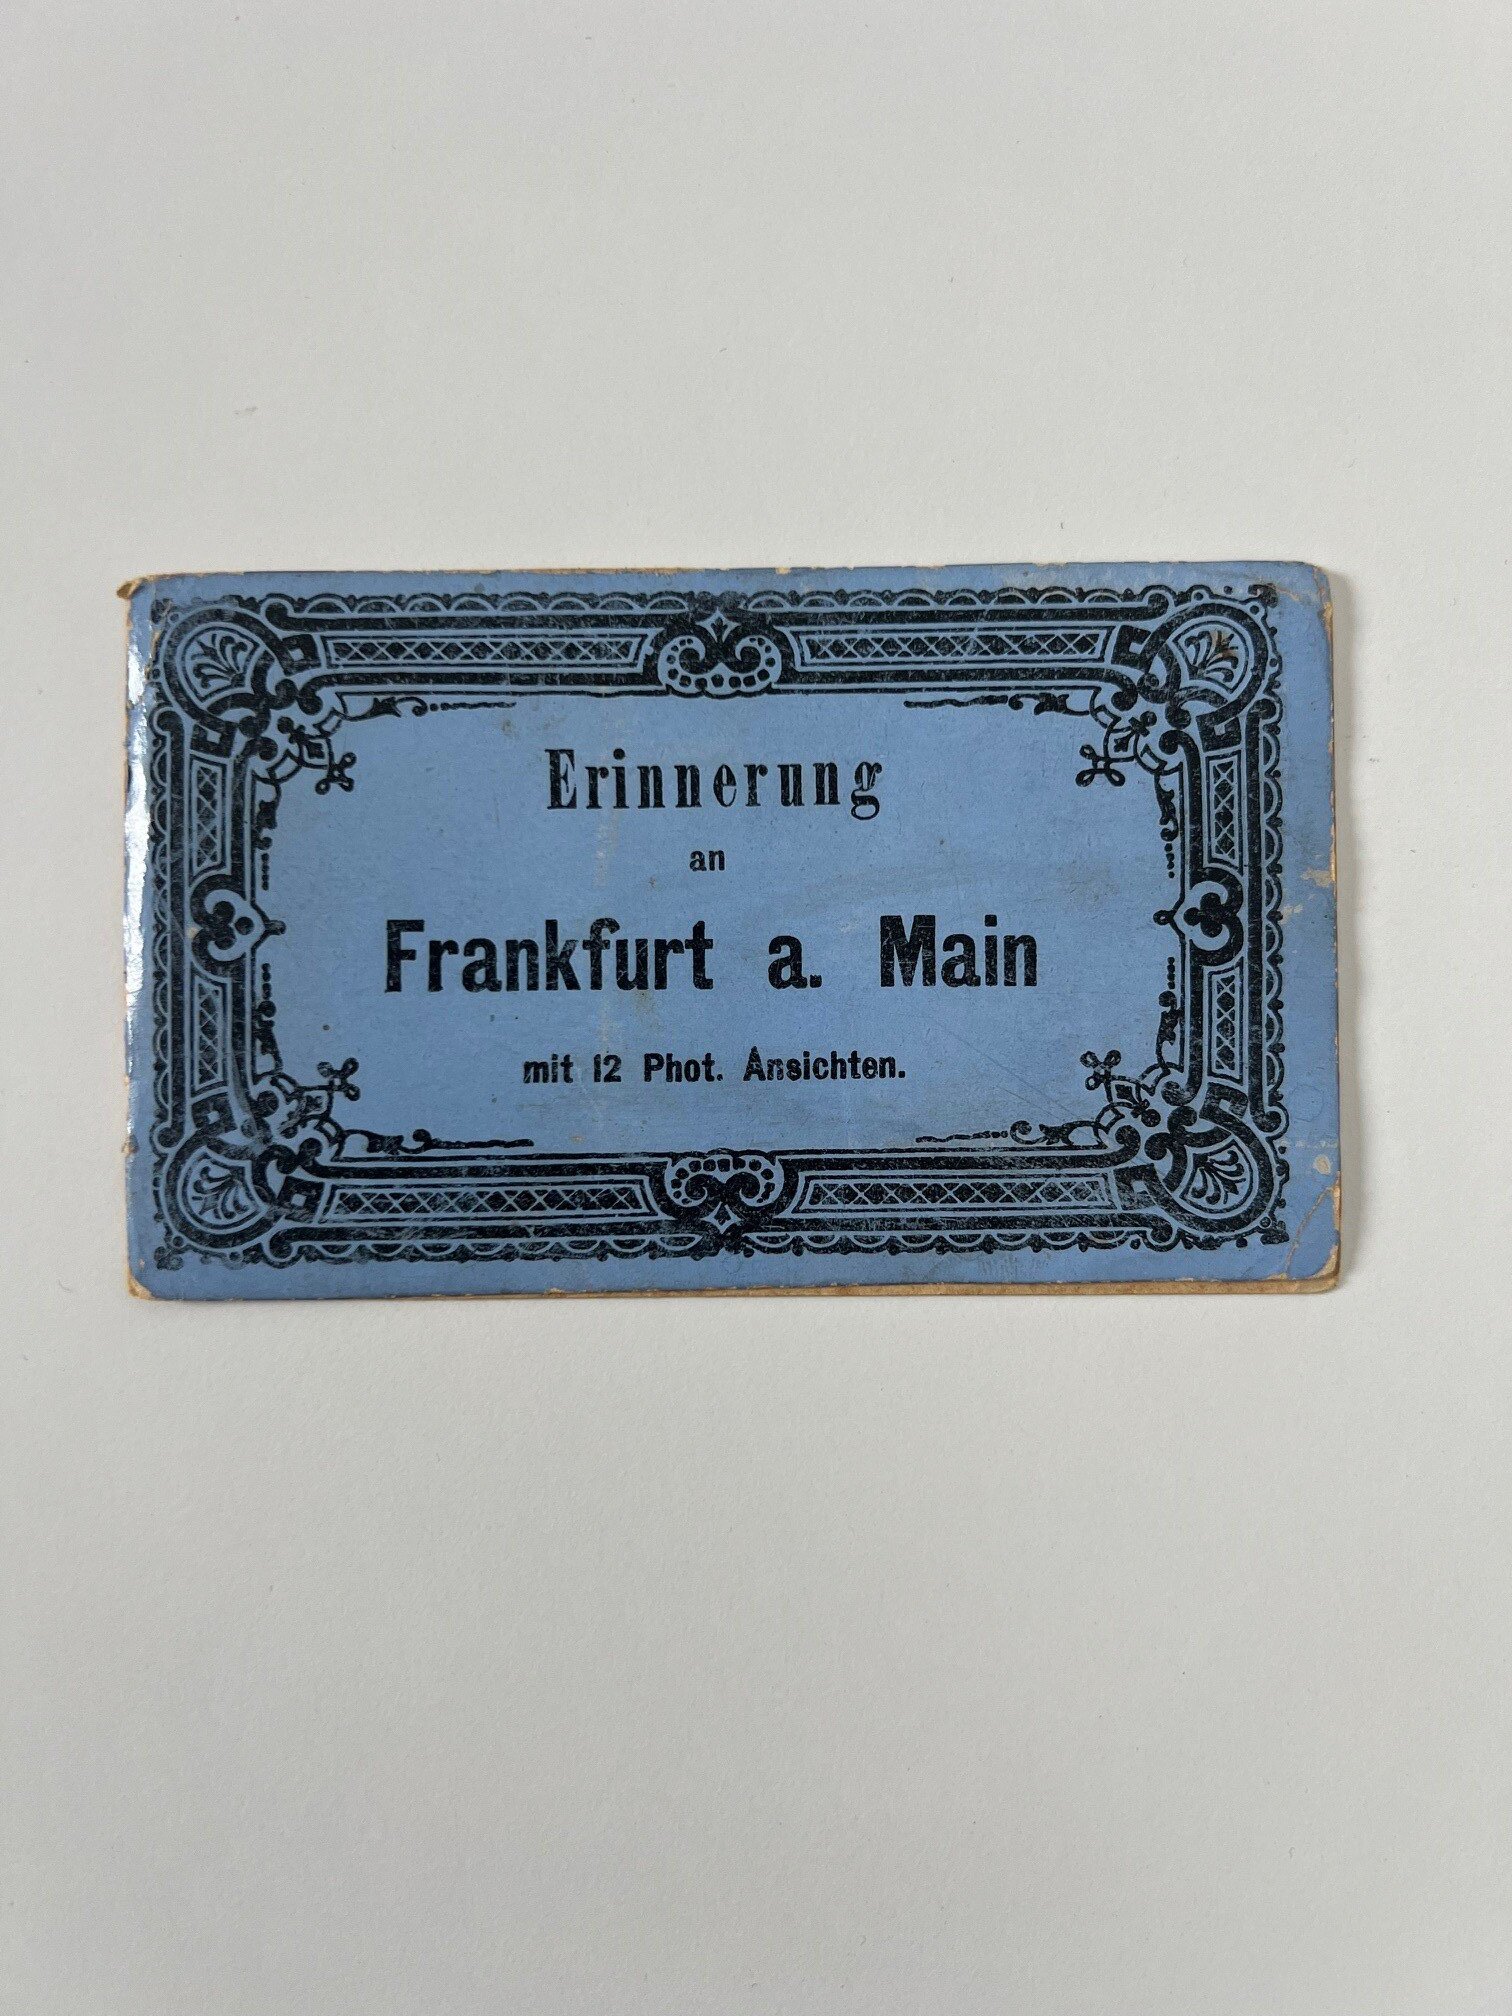 Unbekannter Hersteller, Erinnerung an Frankfurt a. M. mit 12 Phot. Ansichten, Leporello mit 8 von 12 Lithographien, 1887. (Taunus-Rhein-Main - Regionalgeschichtliche Sammlung Dr. Stefan Naas CC BY-NC-SA)